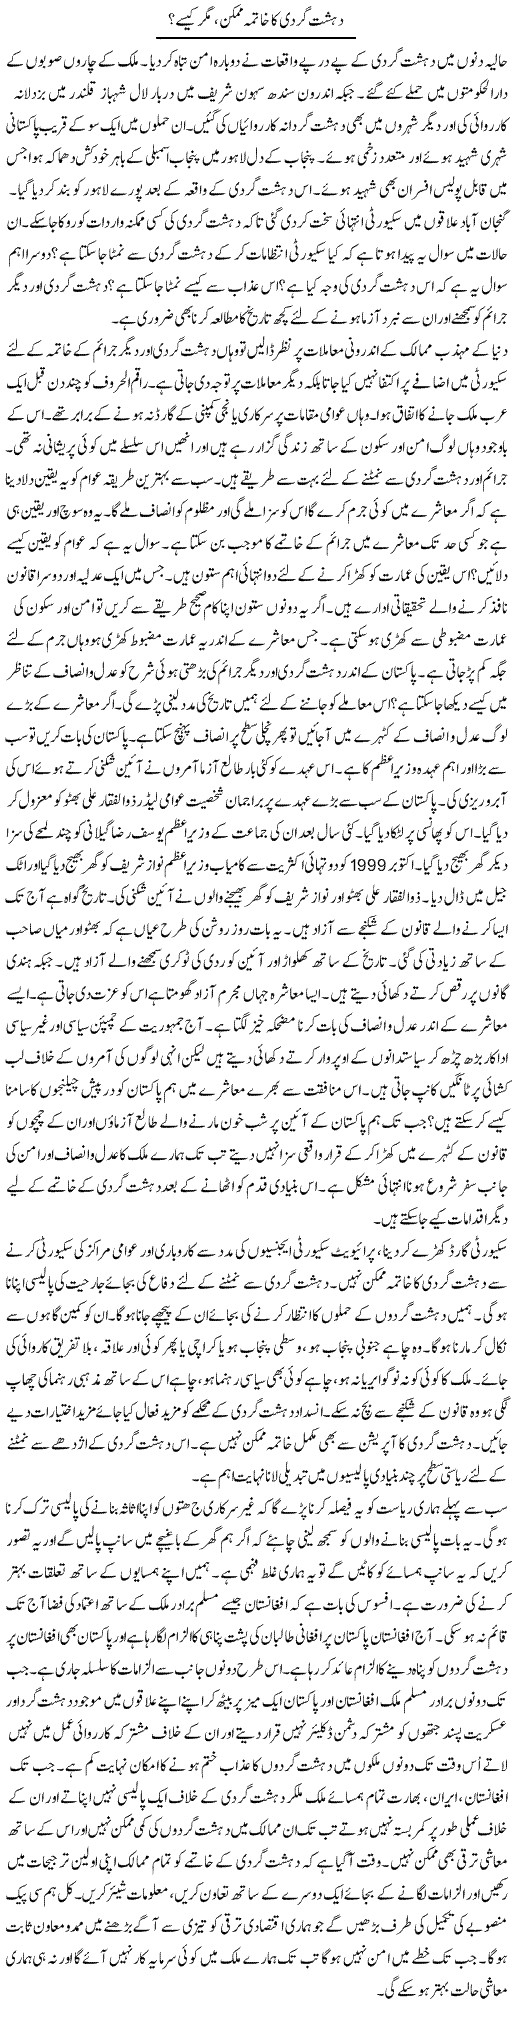 Dehshat Gardi Ka Khatma Mumkin, Magar Kaisay? | Syed Zeeshan Haider | Daily Urdu Columns